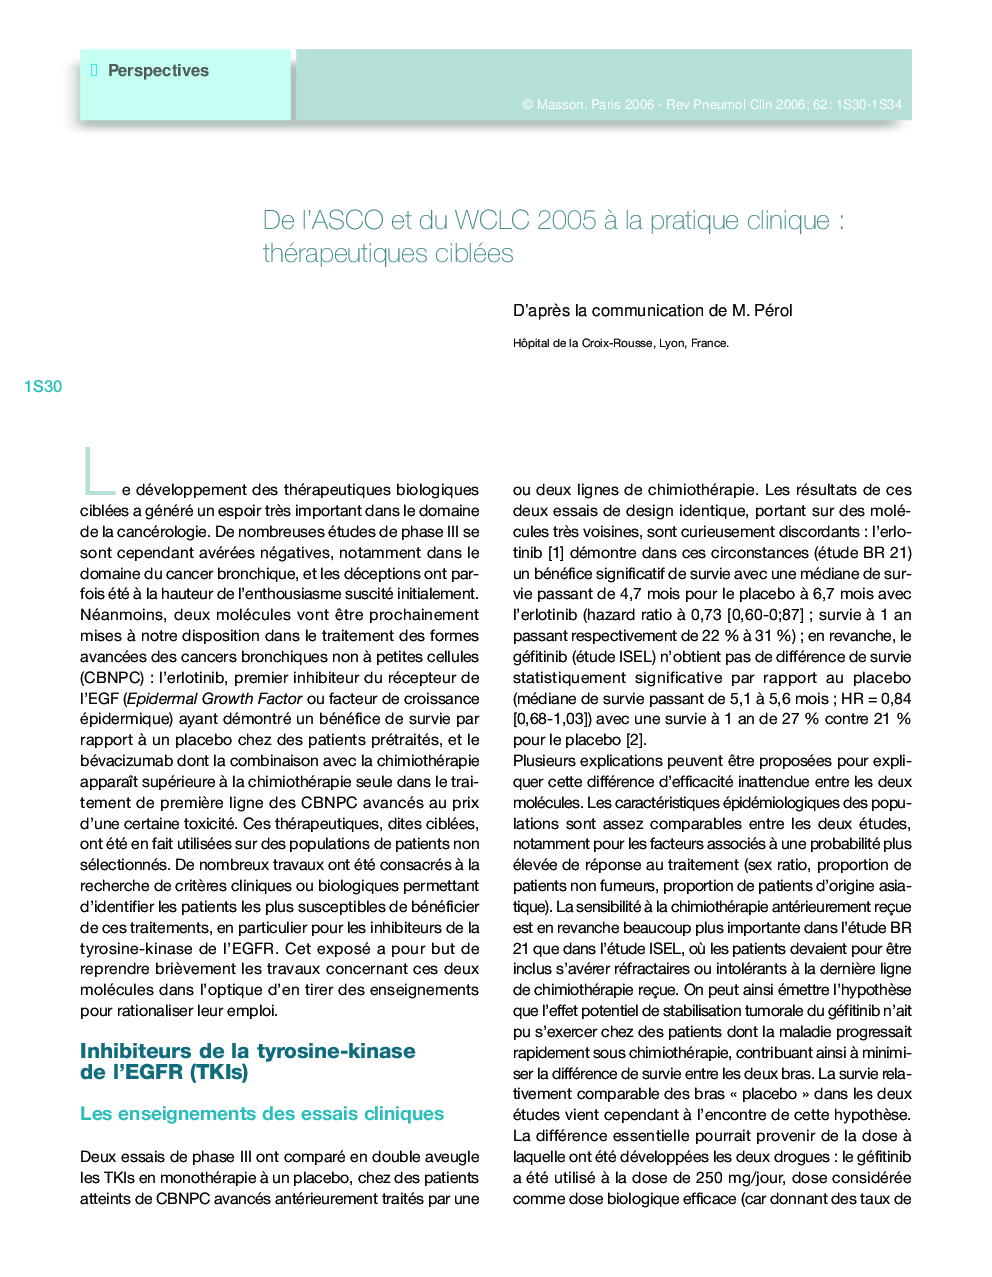 De l'ASCO et du WCLC 2005 Ã  la pratique clinique : thérapeutiques ciblées